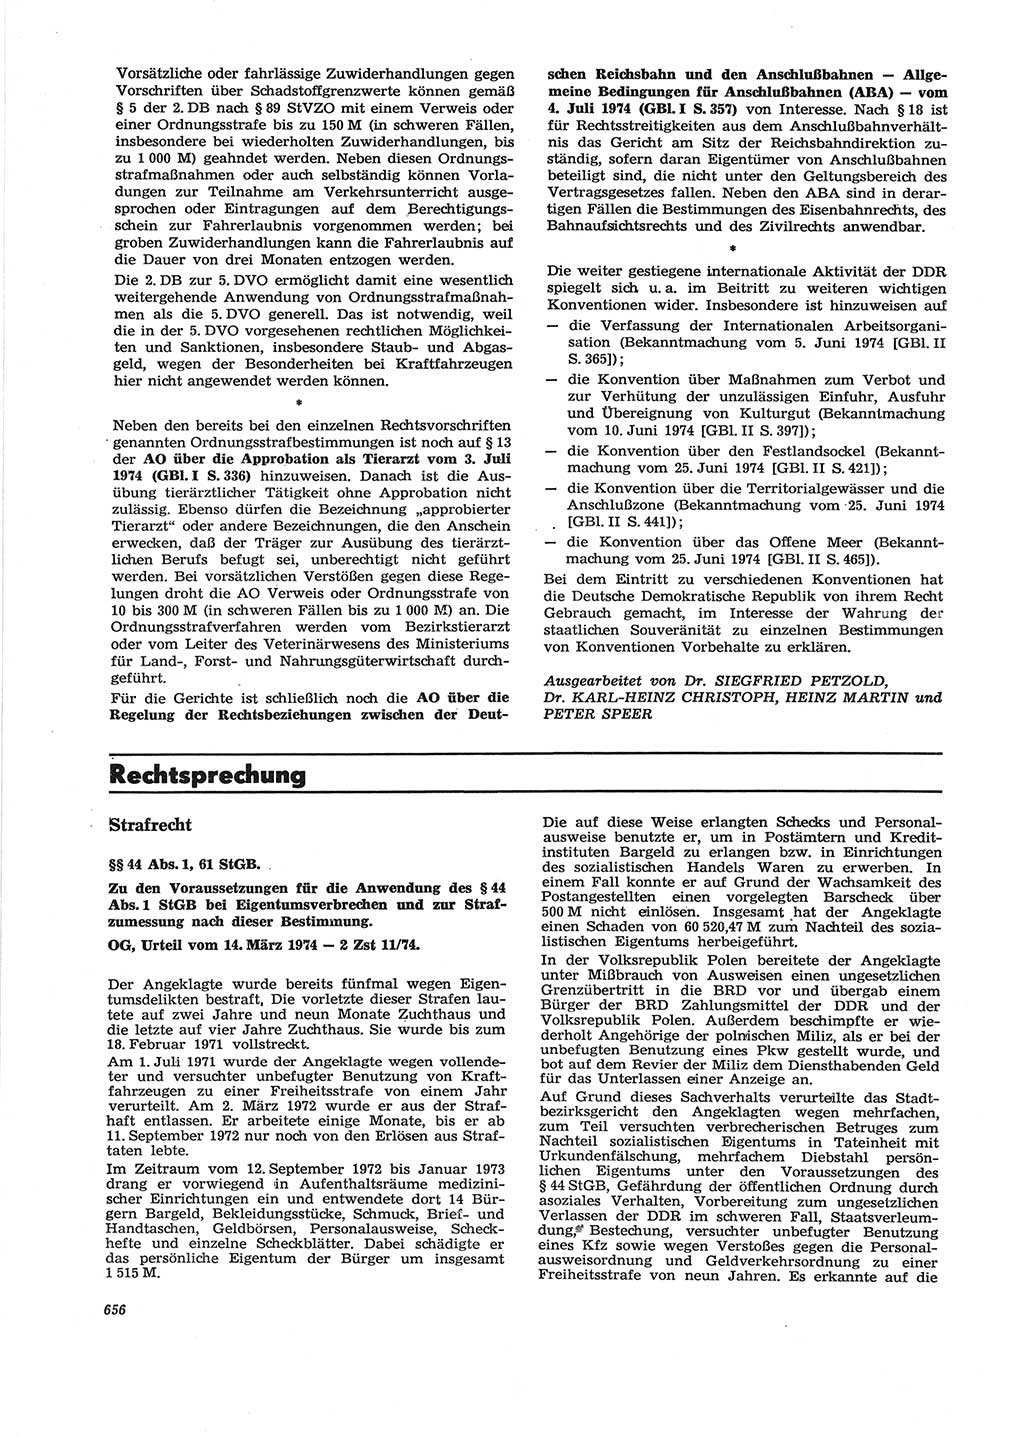 Neue Justiz (NJ), Zeitschrift für Recht und Rechtswissenschaft [Deutsche Demokratische Republik (DDR)], 28. Jahrgang 1974, Seite 656 (NJ DDR 1974, S. 656)